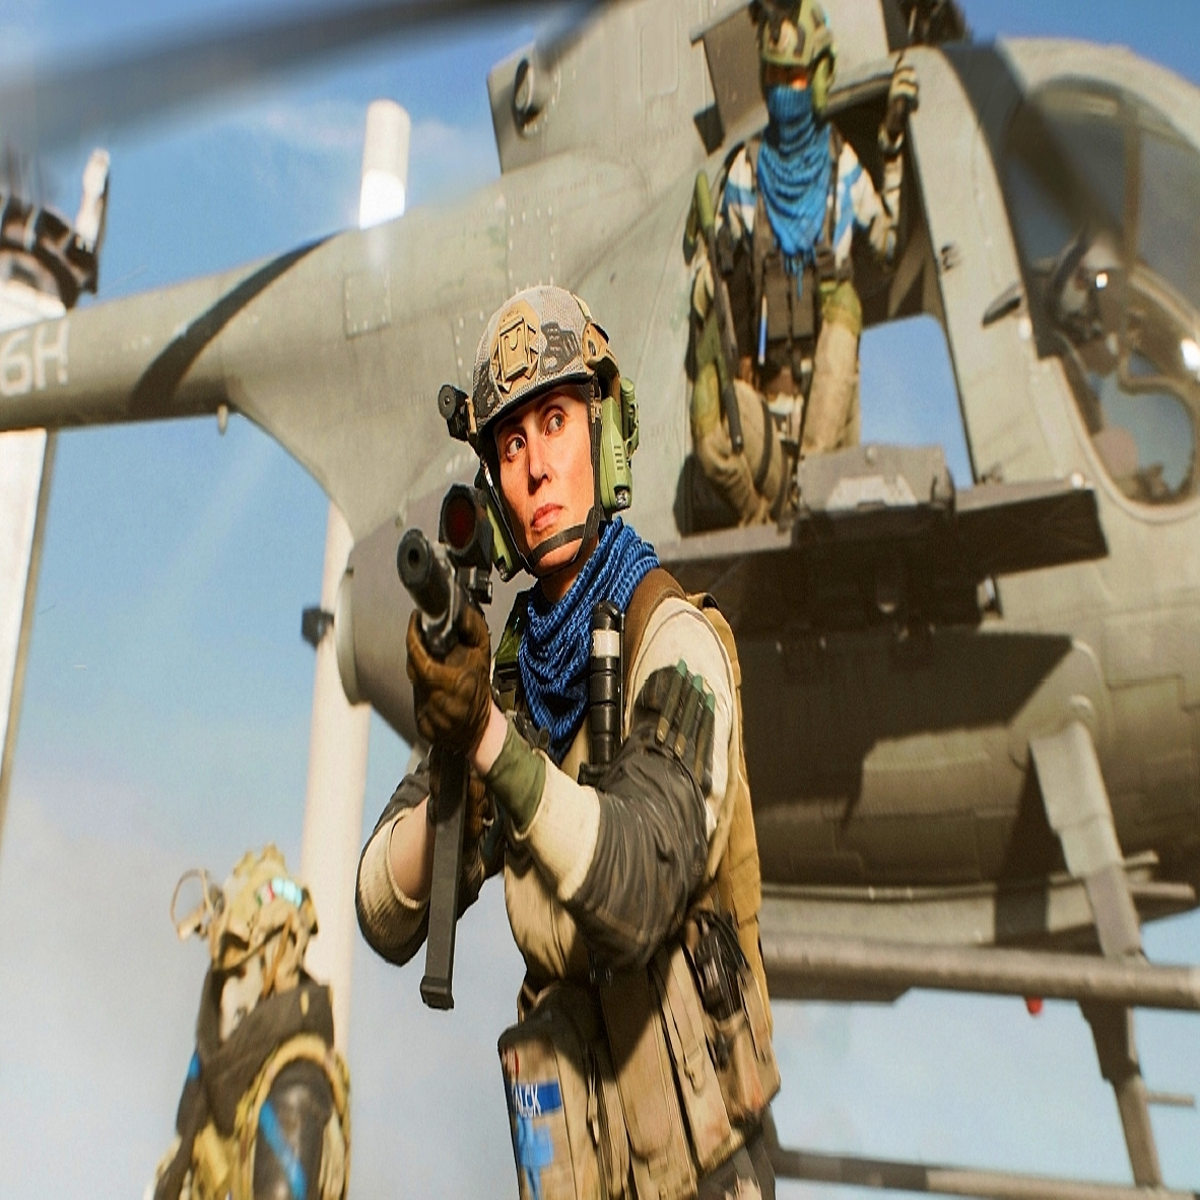 Entre na batalha em Battlefield 2042 – Temporada 5: New Dawn, com lançamento  em 7 de junho – PlayStation.Blog BR